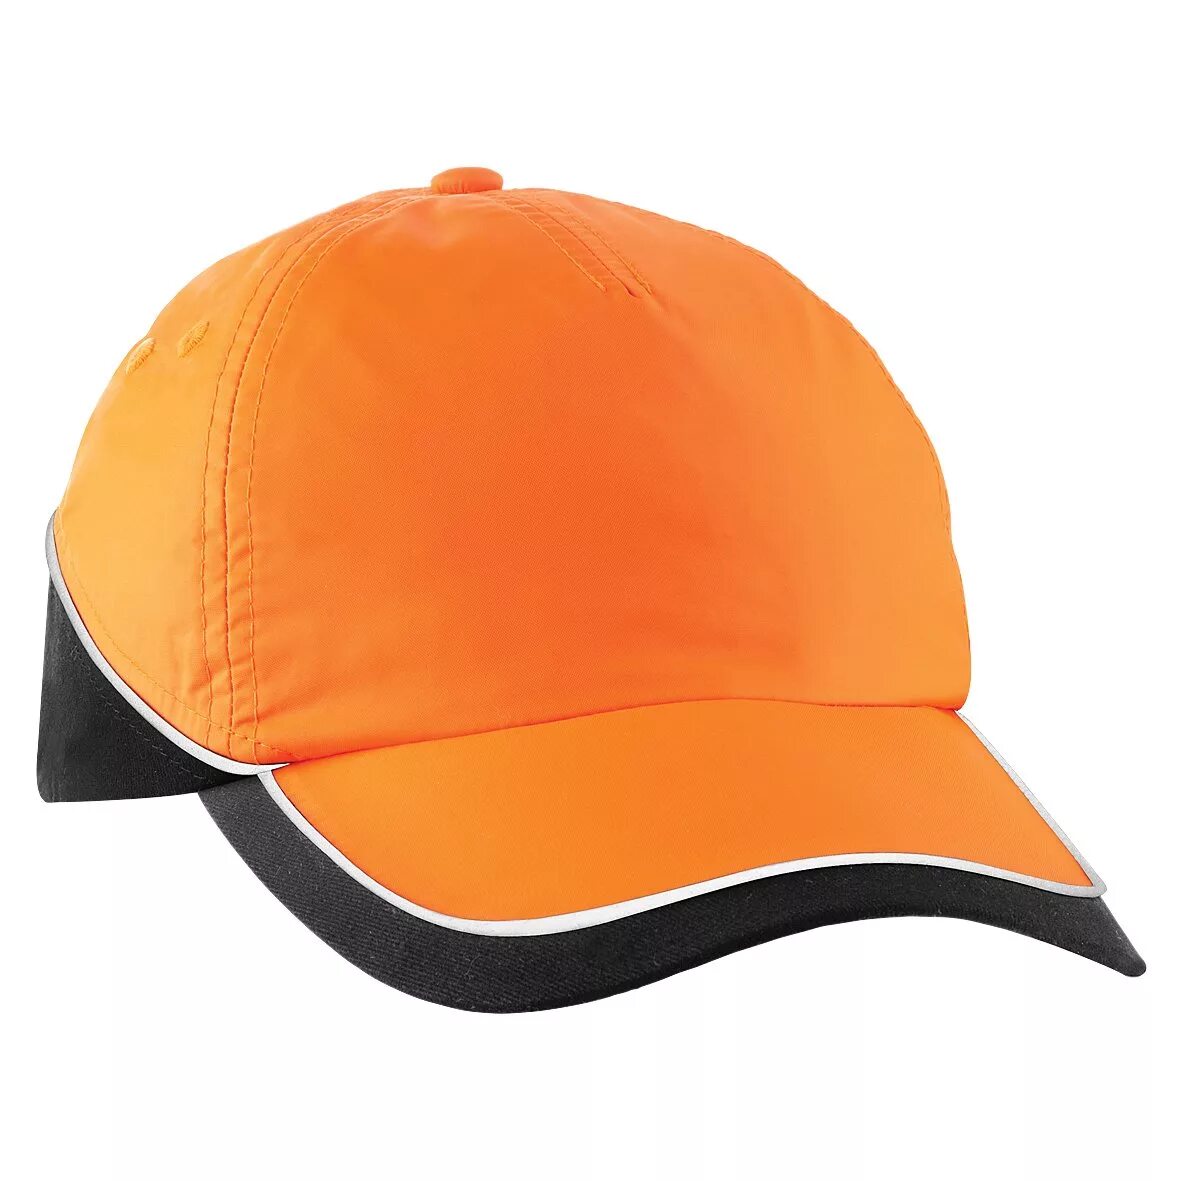 Спортивные cap. Yellow Baseball cap. Кепка шапка для водных видов спорта. Cap Color Sport.